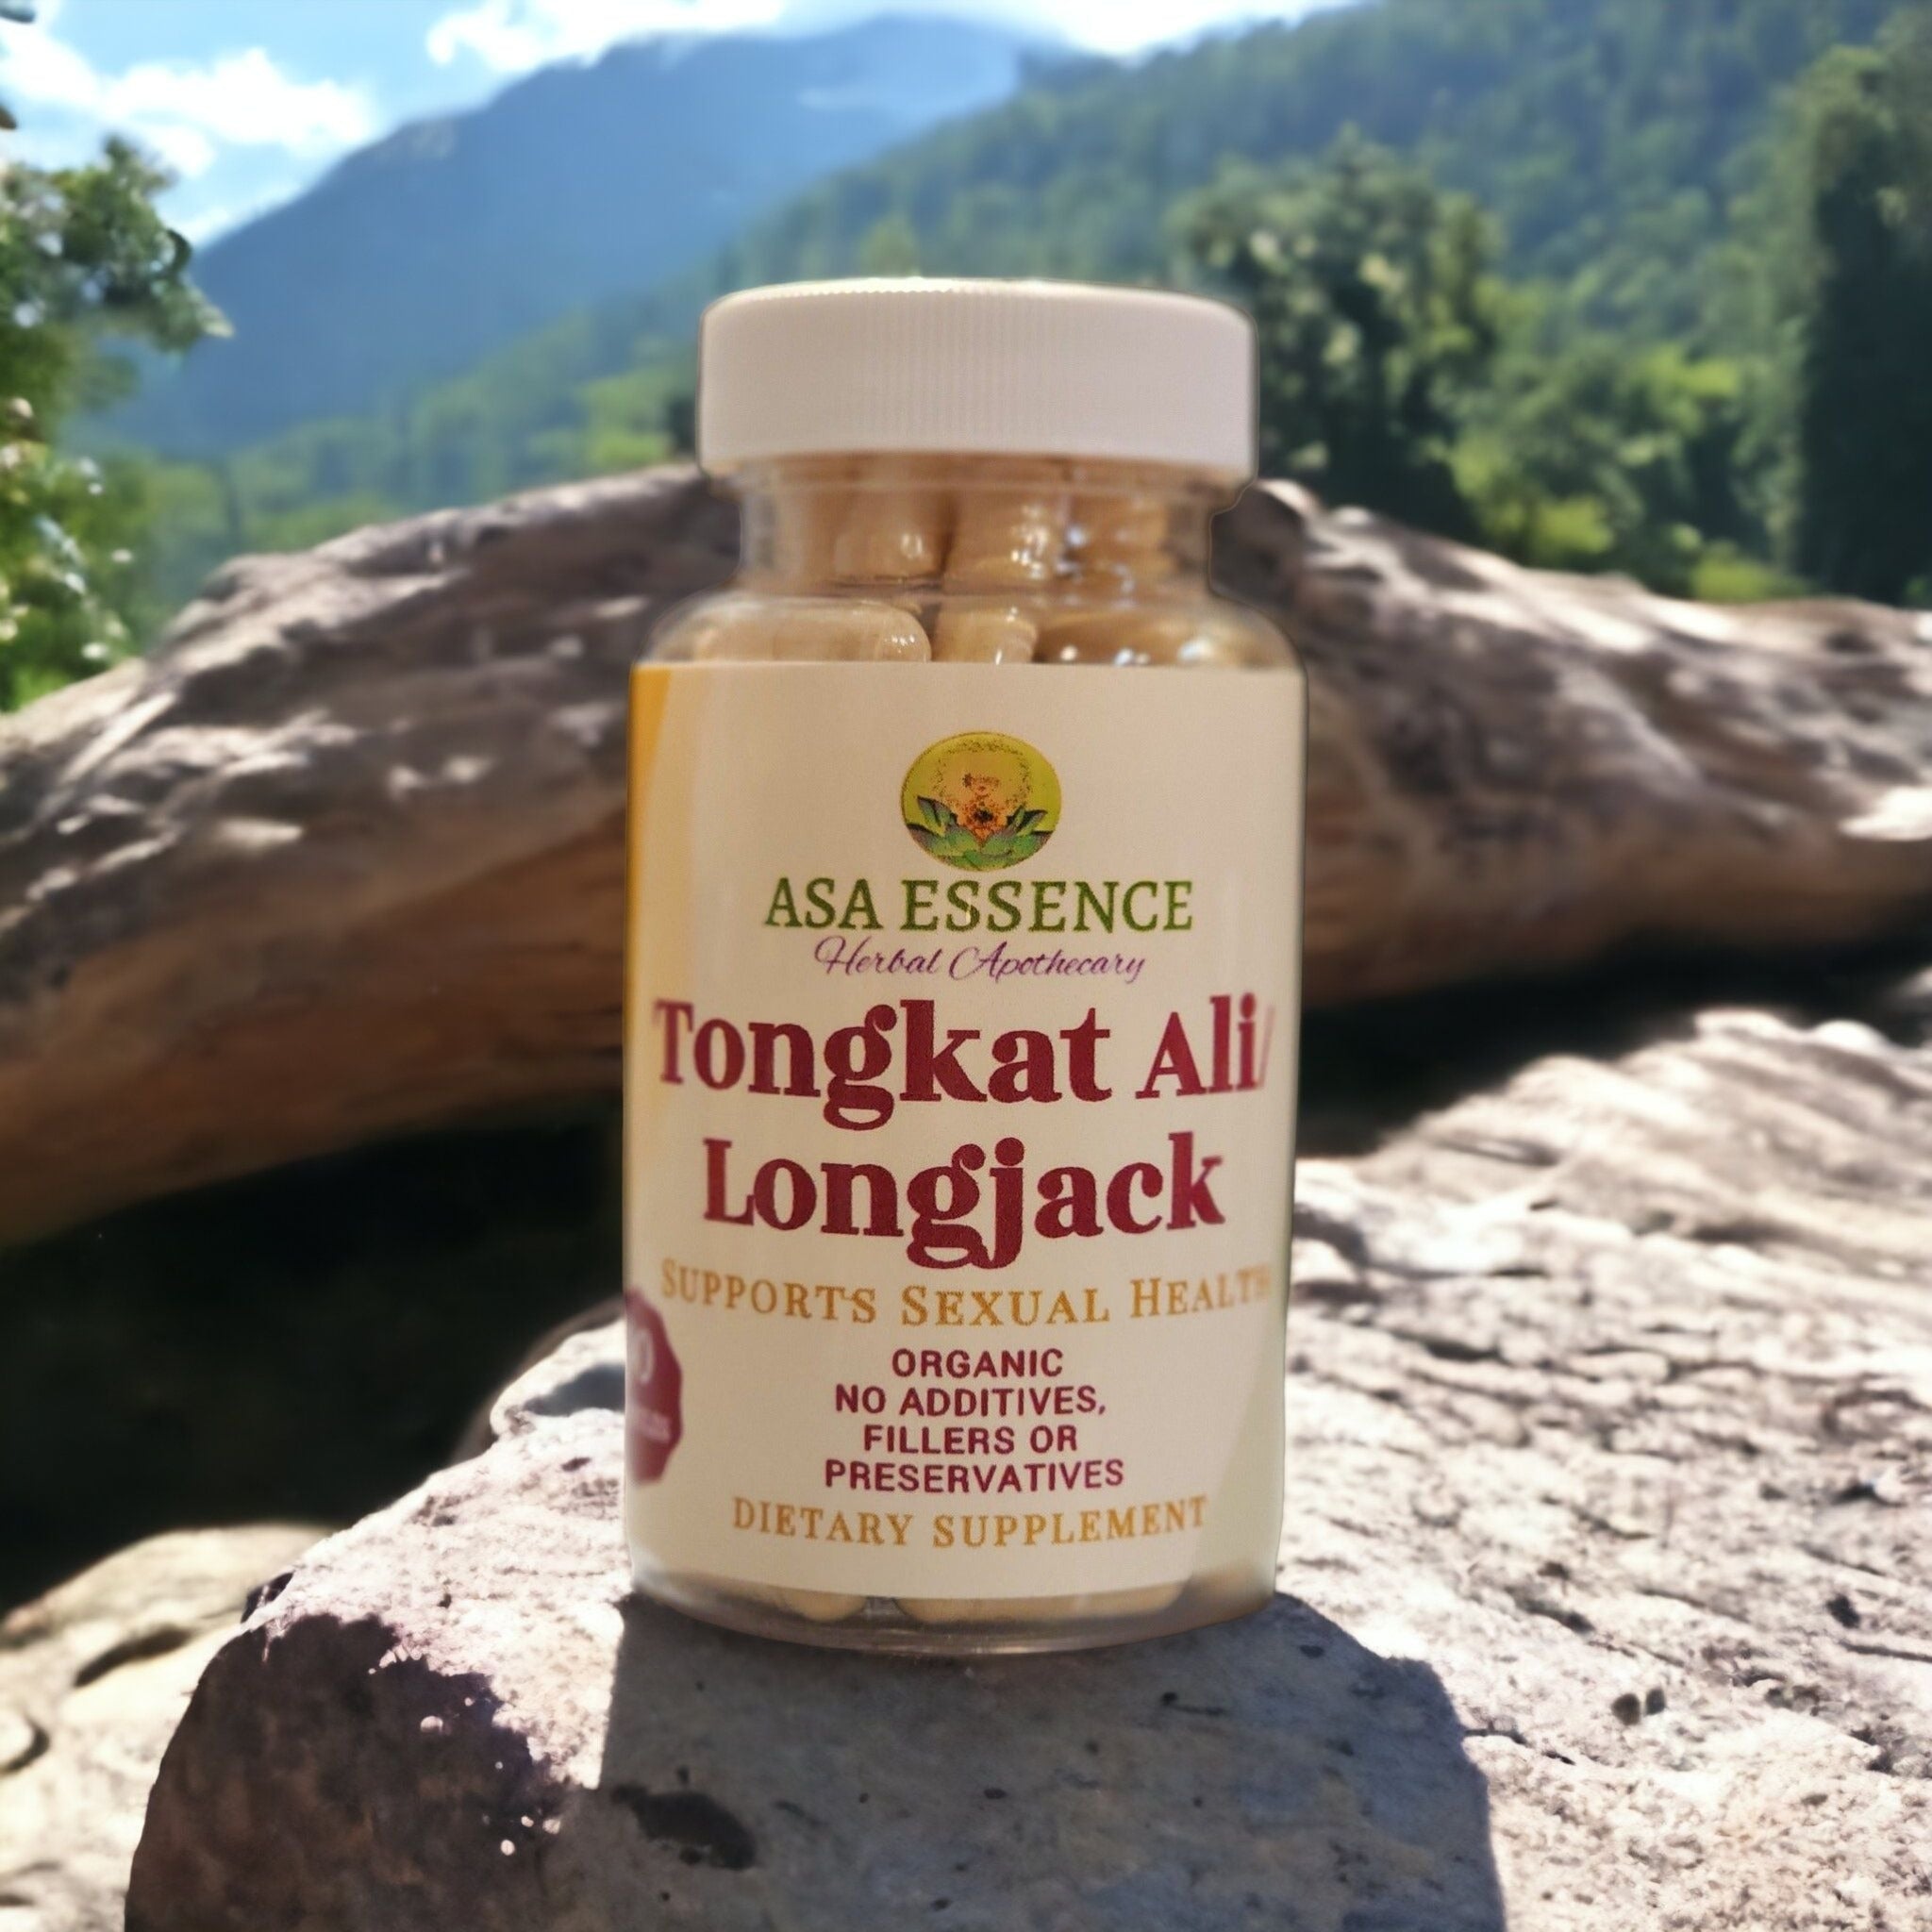 Tongkat Ali/Longjack